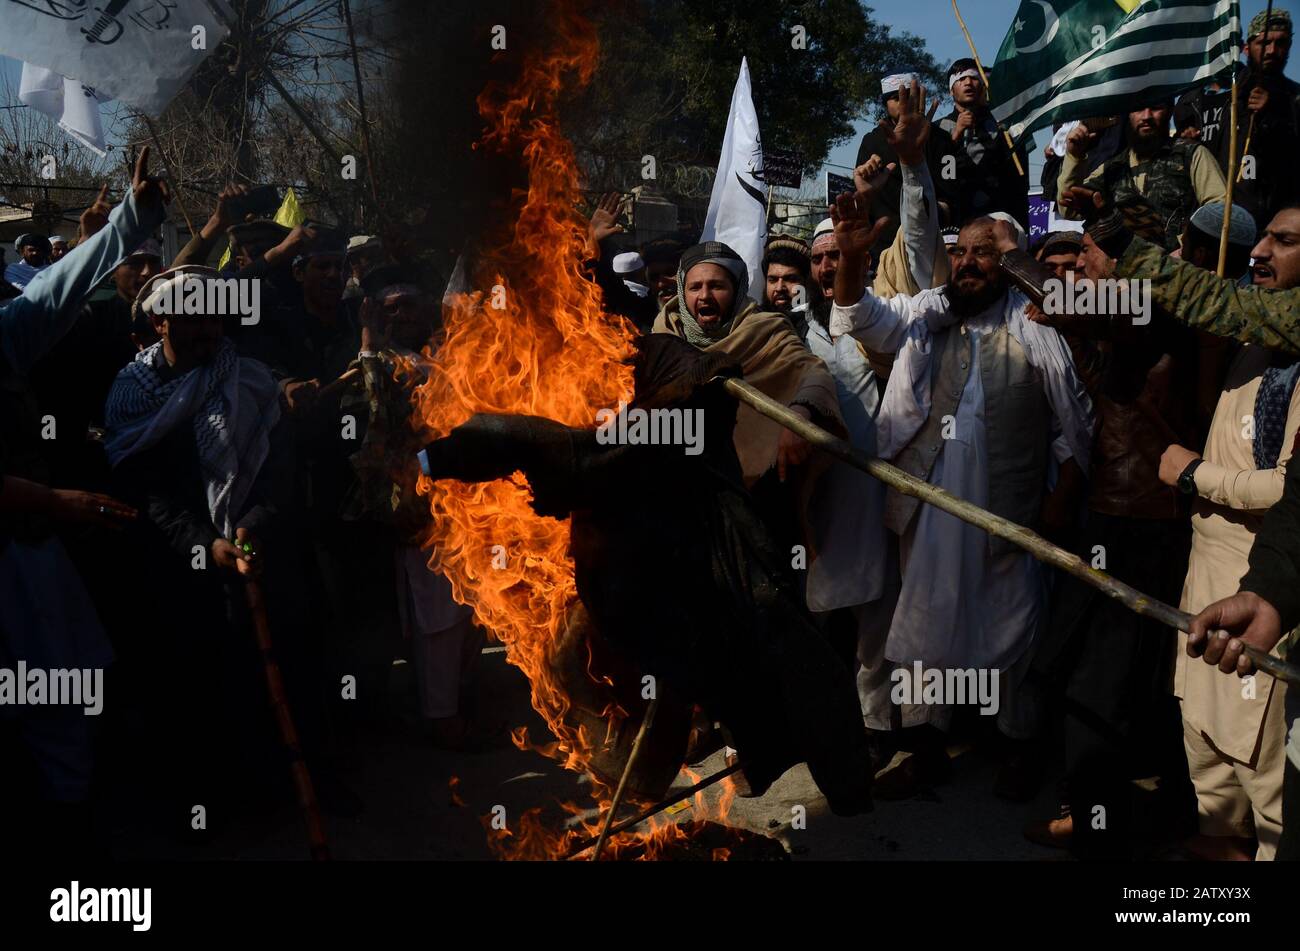 5 Febbraio 2020: Peshawar, Pakistan. 05 Febbraio 2020. I pakistani organizzano una protesta per celebrare la Giornata della solidarietà del Kashmir, nella città pakistana di Peshawar. I partecipanti hanno sventolato bandiere e slogan cantati a sostegno dell'India amministrato Kashmir e la lotta di Kasmiris per il loro diritto all'autodeterminazione. La bandiera indiana e un'effigie del presidente indiano Narendra modi sono stati stabiliti durante la protesta di mercoledì. I bambini si unirono anche al raduno che agitava il Pakistan e la bandiera Azad Jammu e Kashmir in solidarietà con il Kashmiris. Lo Stato indiano di Jammu e Kashmir è stato sottoposto a gravi restrizioni Foto Stock